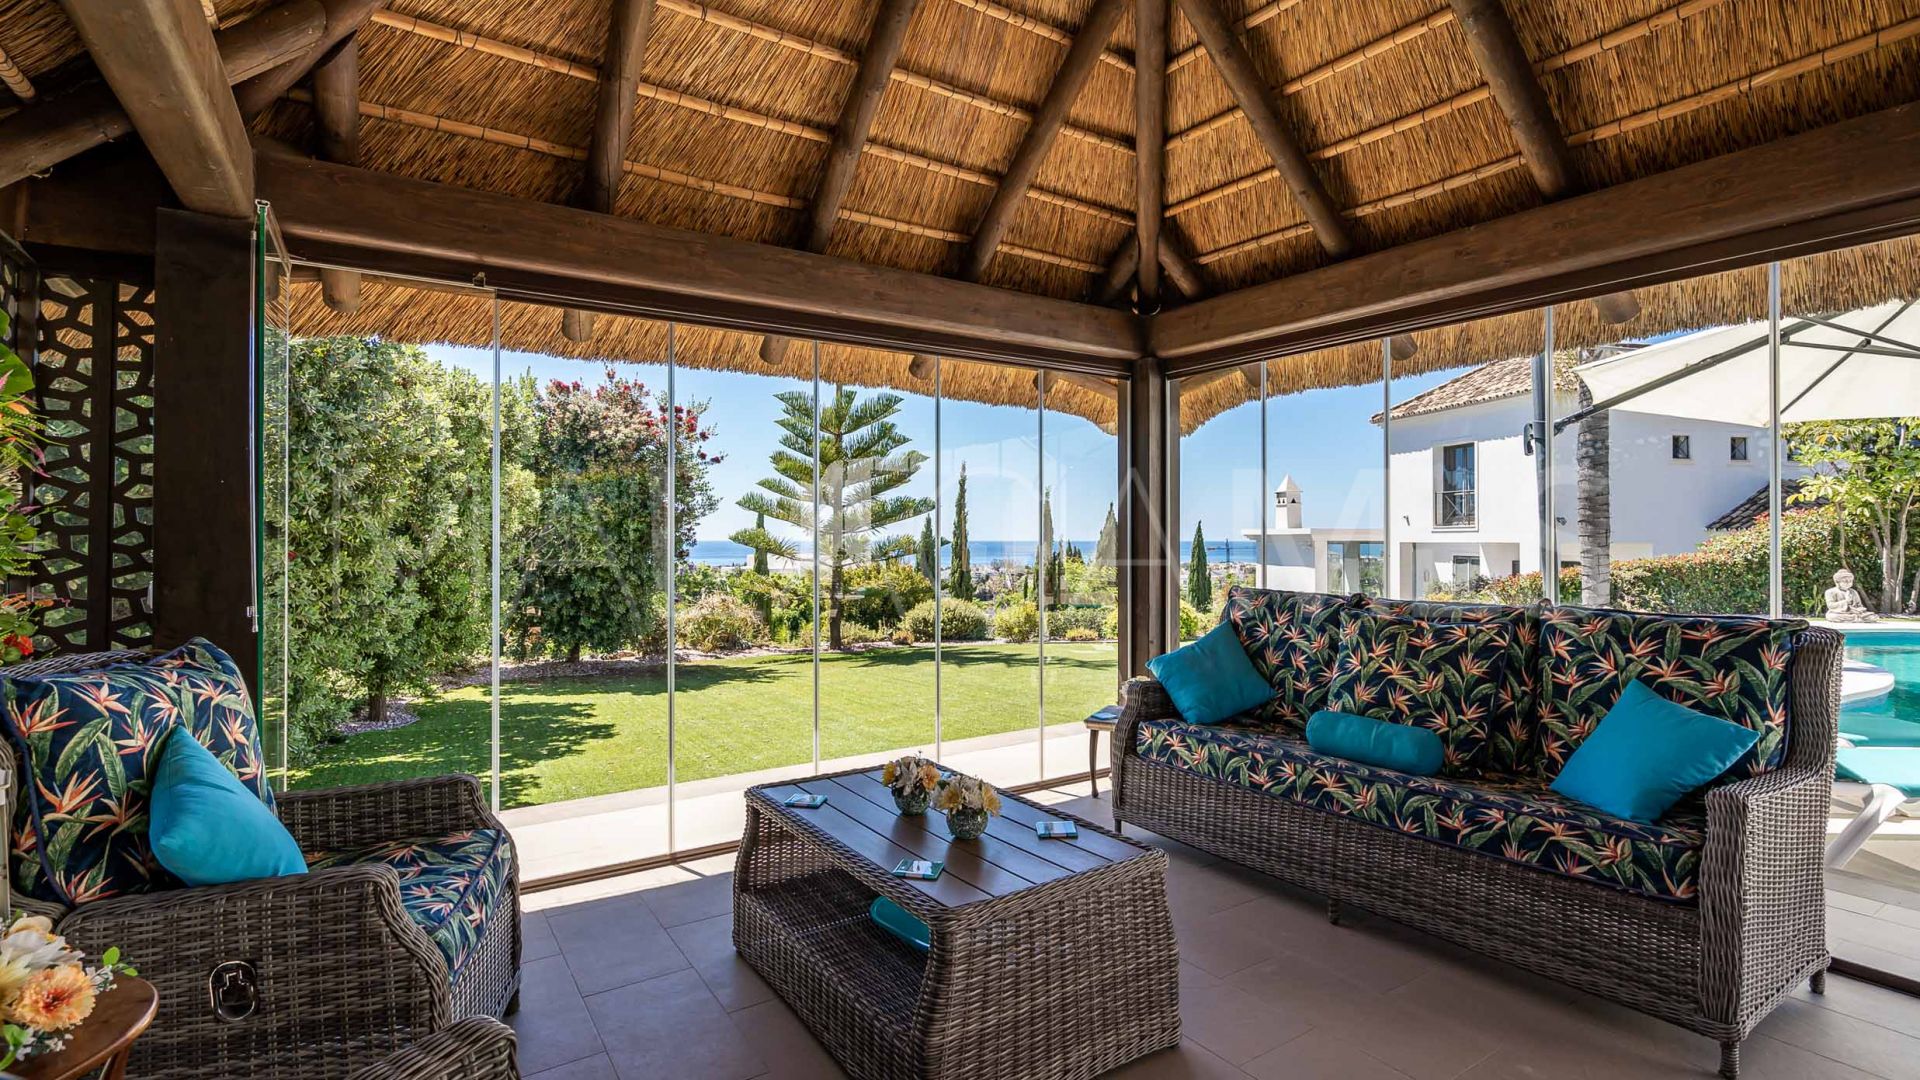 Villa with 4 bedrooms for sale in Los Flamingos